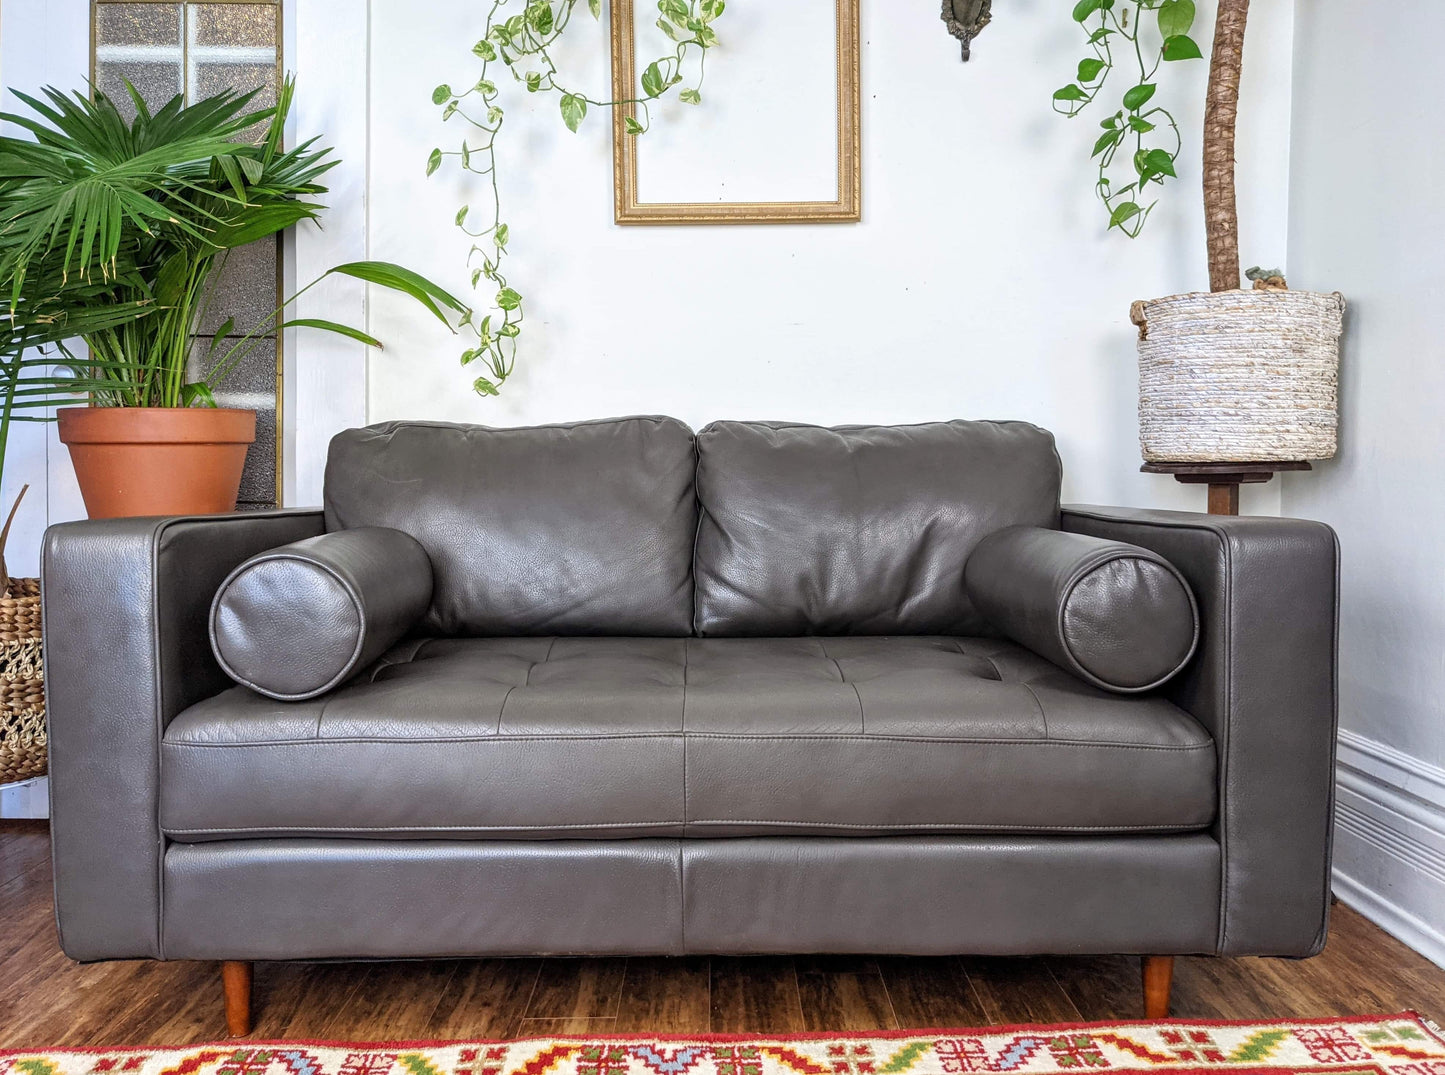 The Concord Sofa